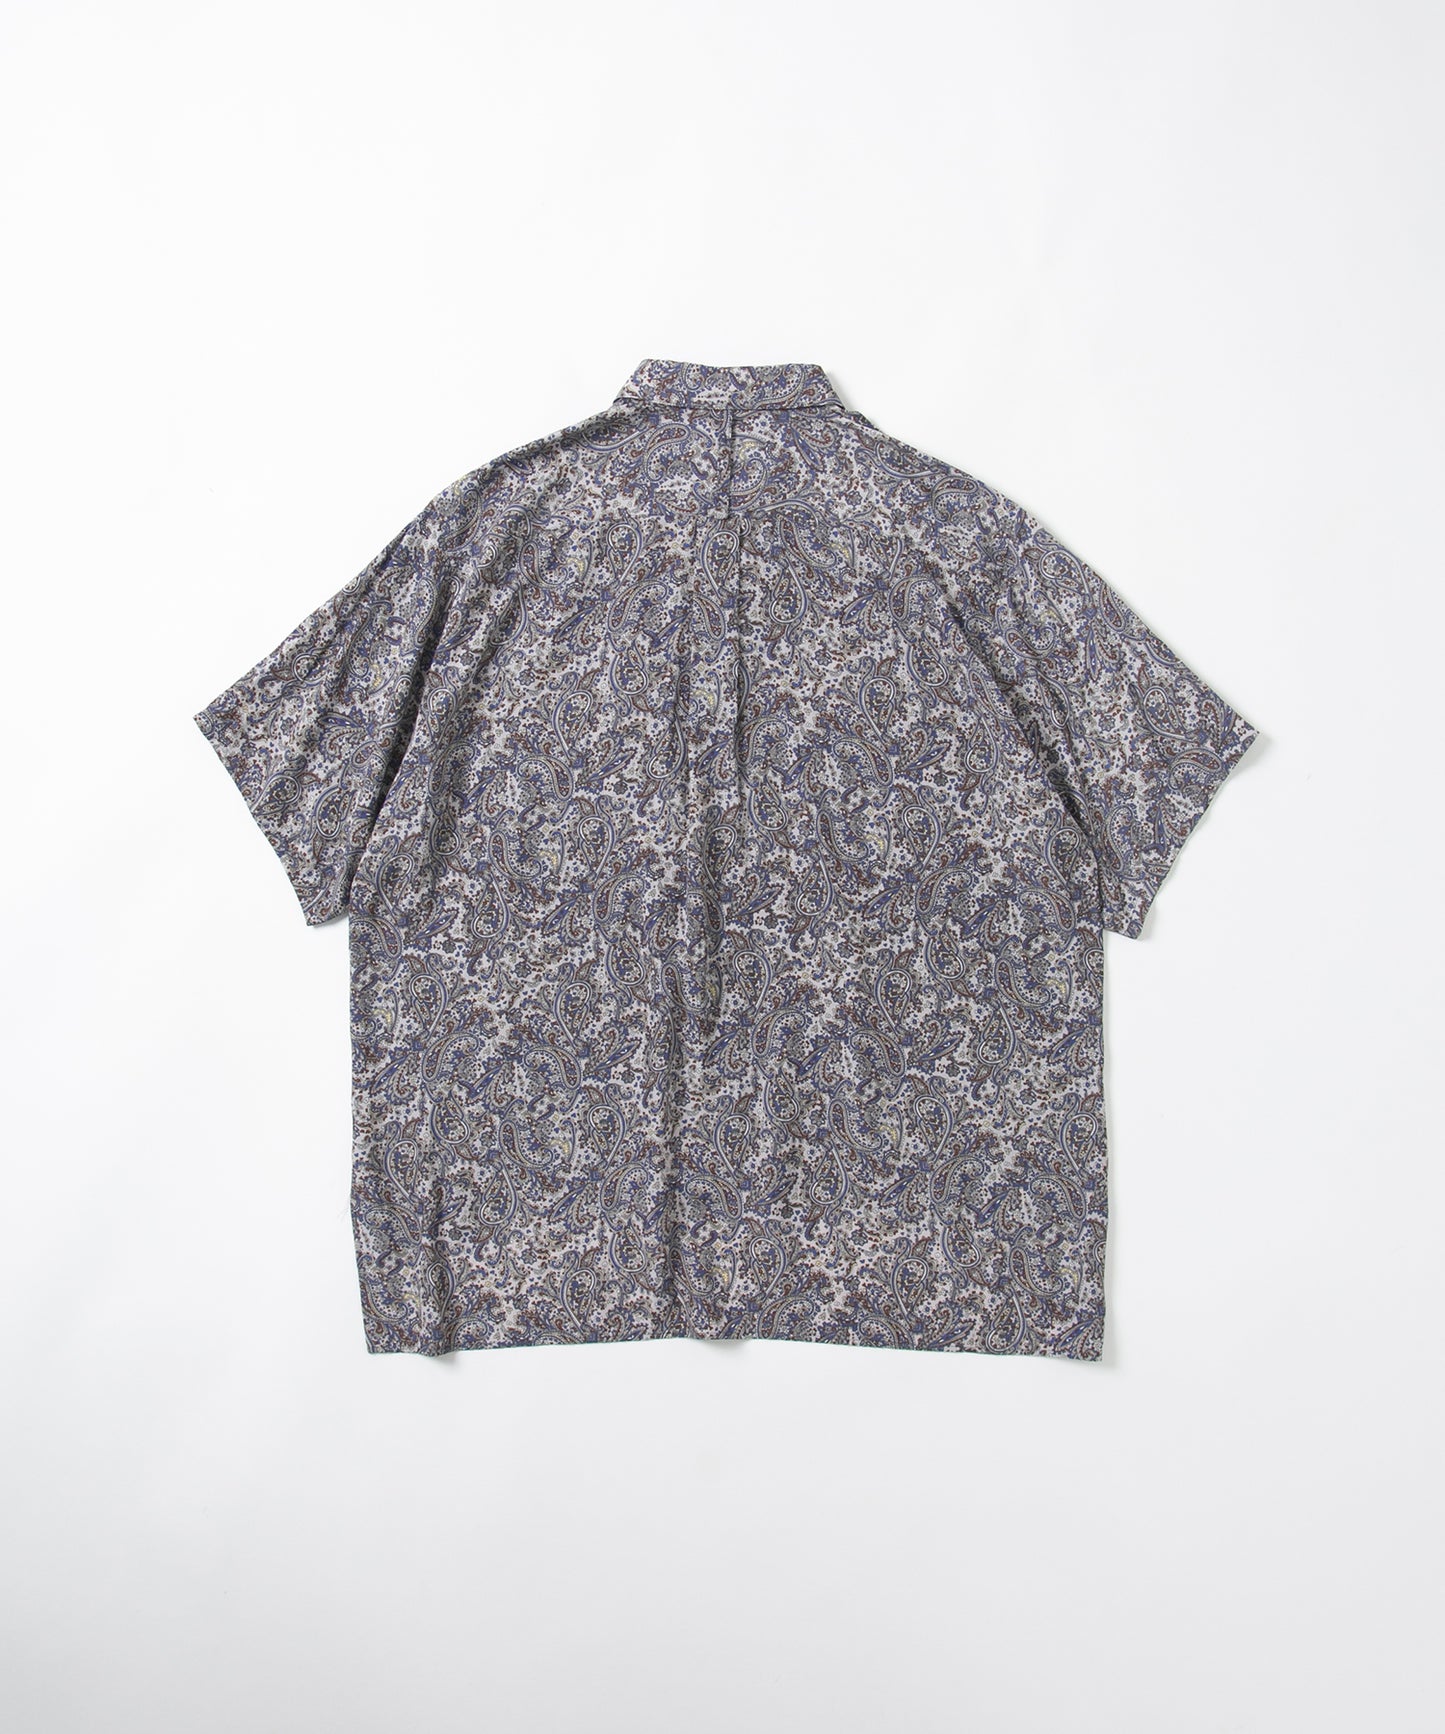 Paisley Printed Short Sleeve Shirt